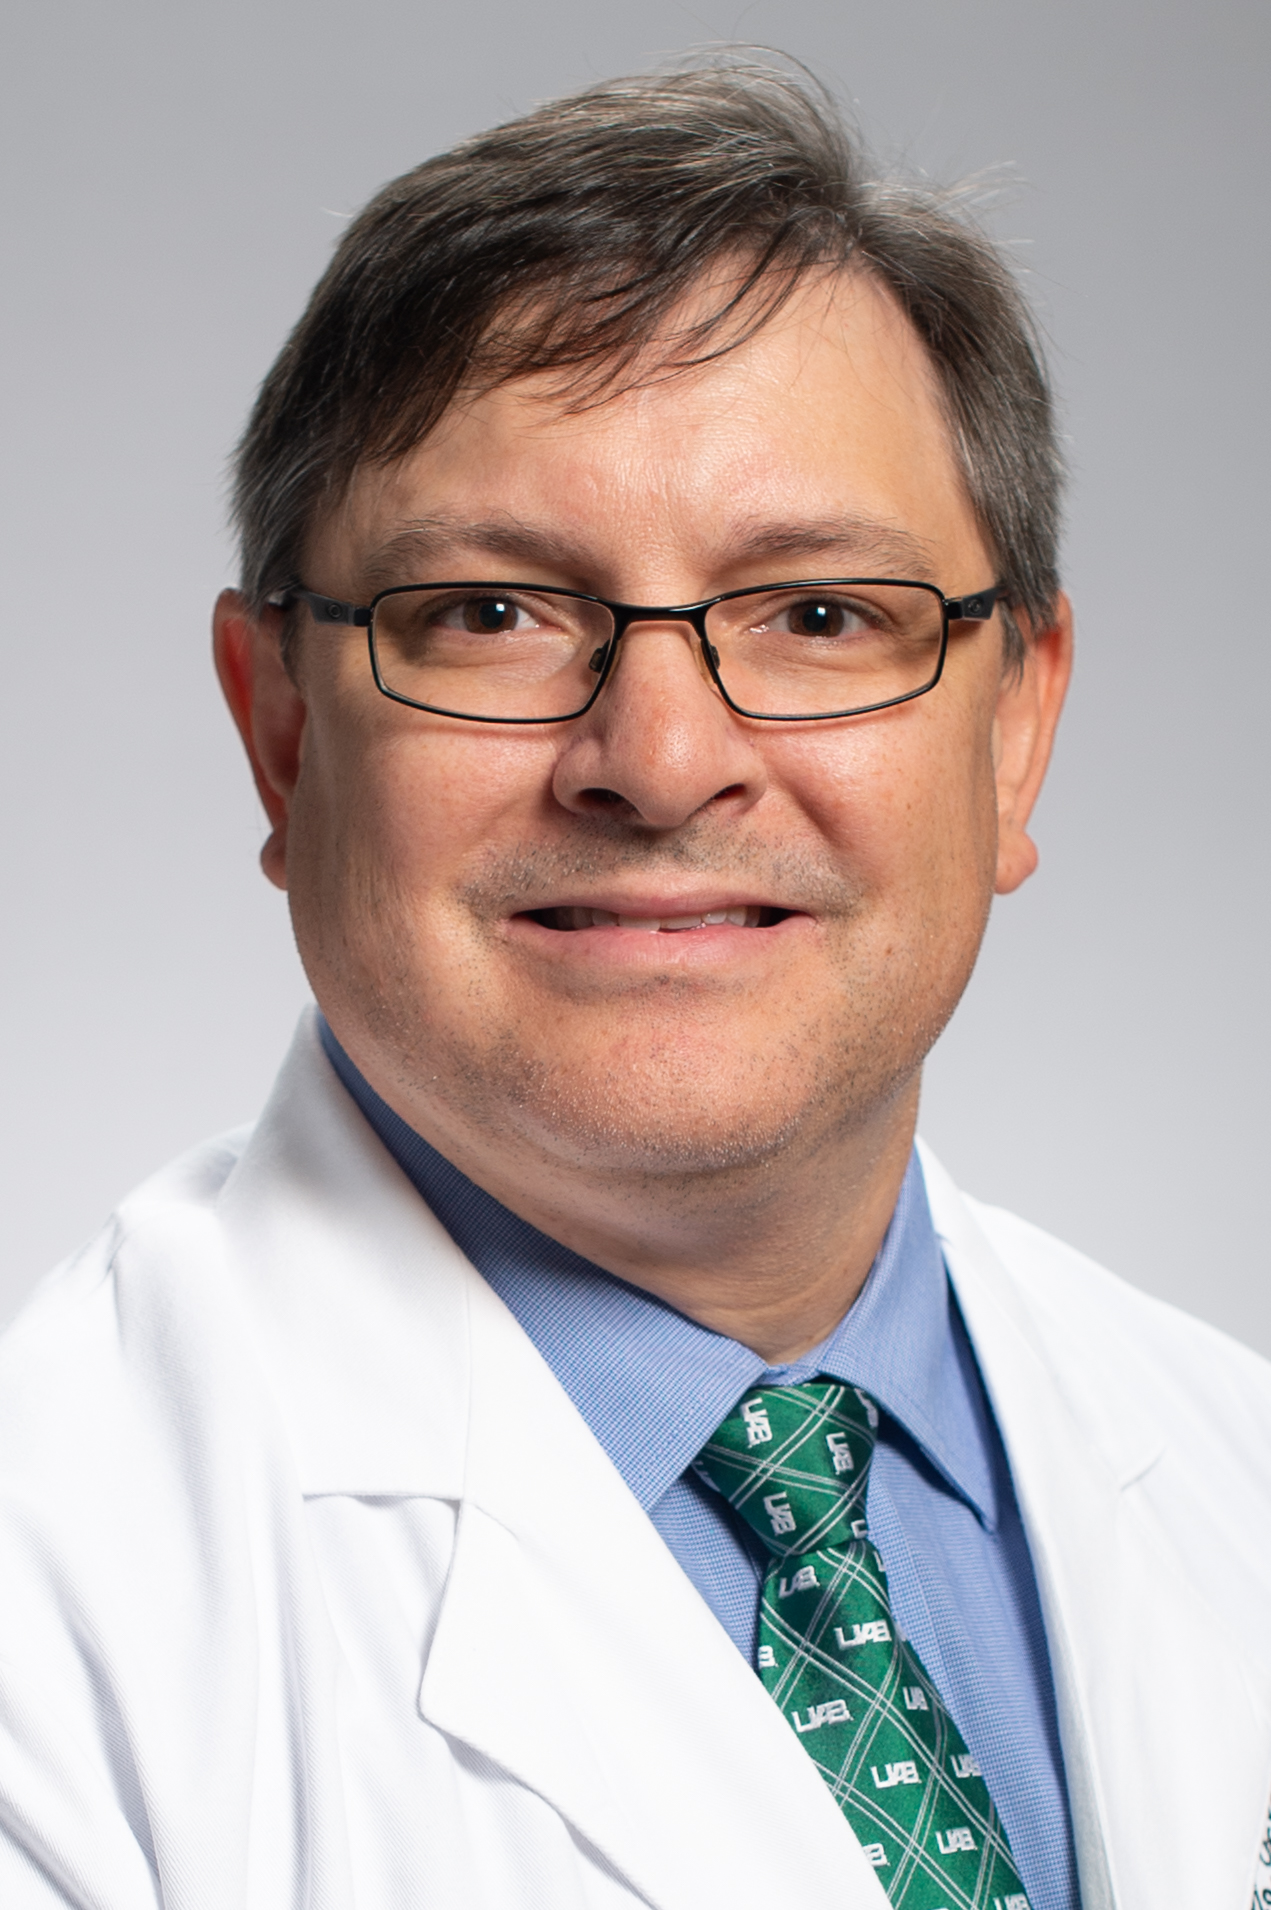 Headshot of Dr. C. Ryan Miller, MD, PhD (Professor, Neuropathology) in white medical coat, 2019.